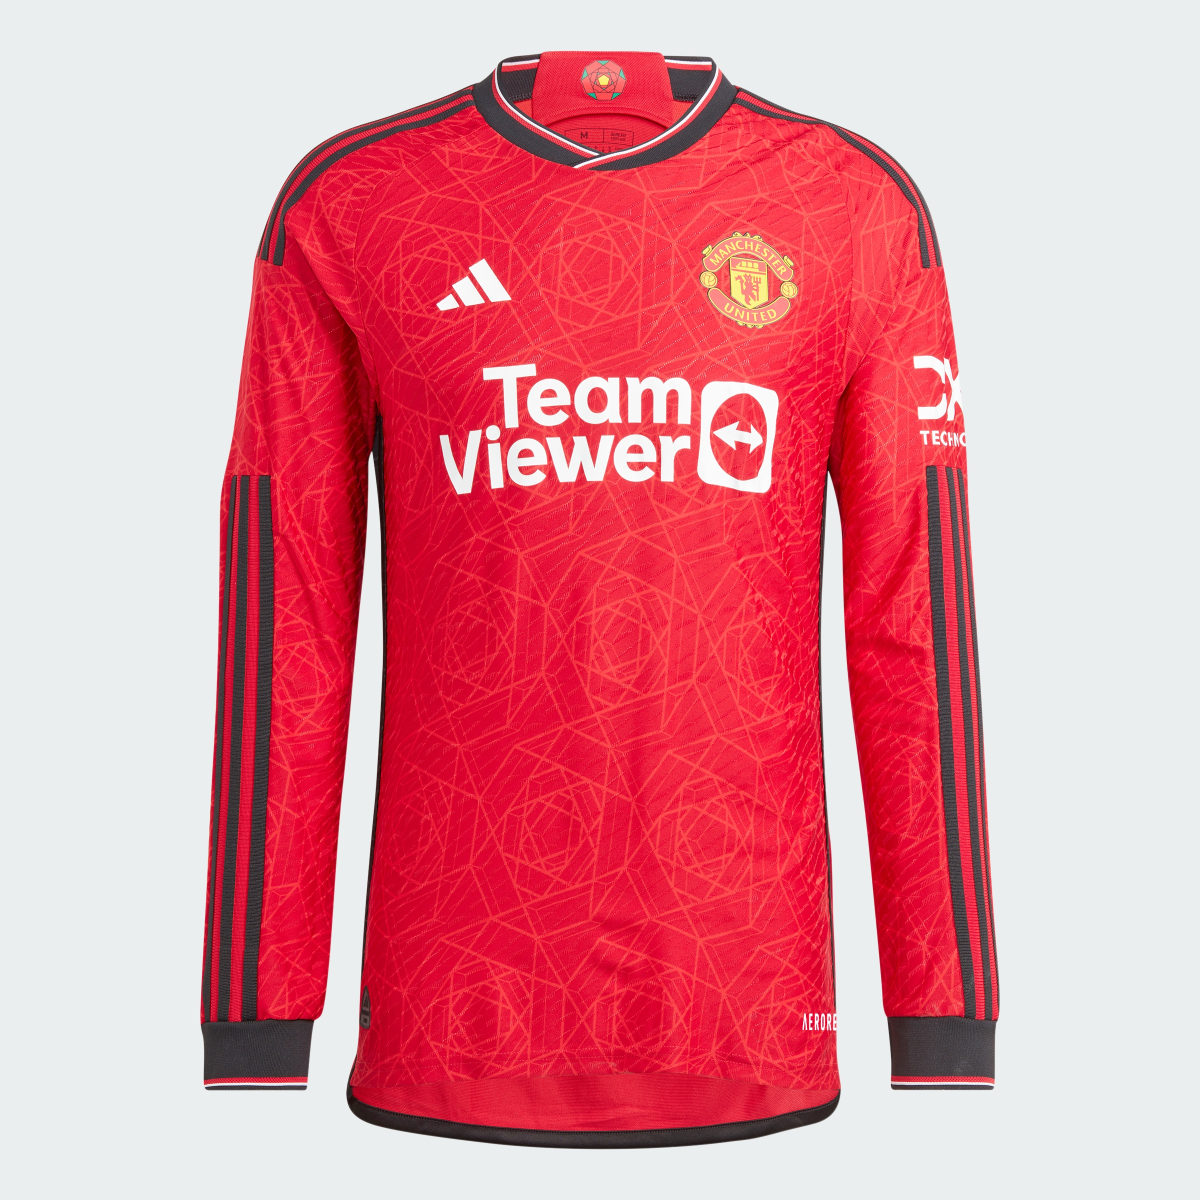 Adidas Camisola Principal de Manga Comprida 23/24 do Manchester United. 5